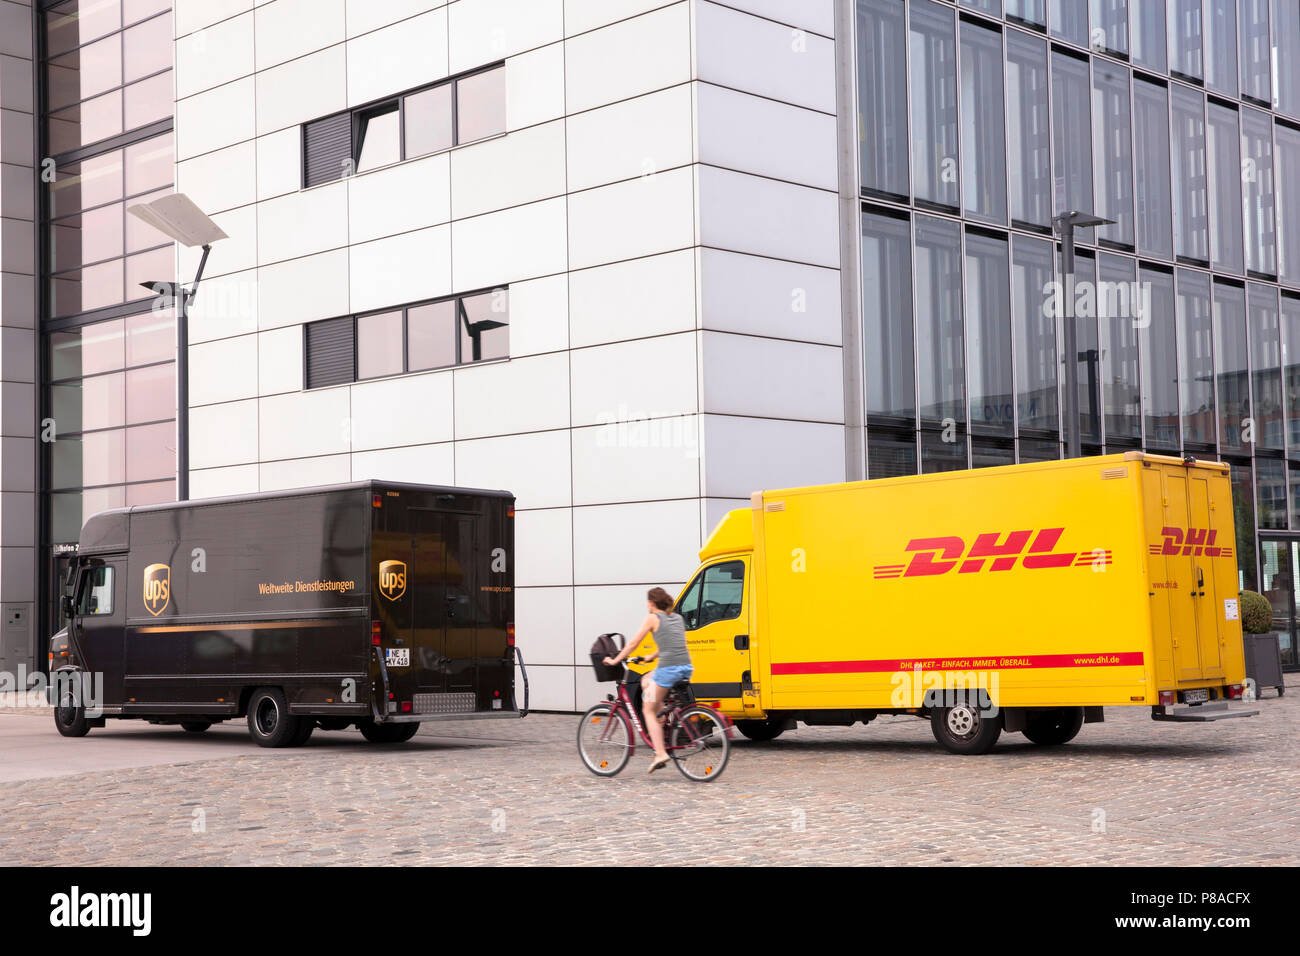 Servicio de paquetería DHL y UPS parcel service coches delante de la grúa en casa Sur Rheinau Harbour, en Colonia, Alemania. DHL und UPS Fahrzeuge vor dem Kranh Foto de stock